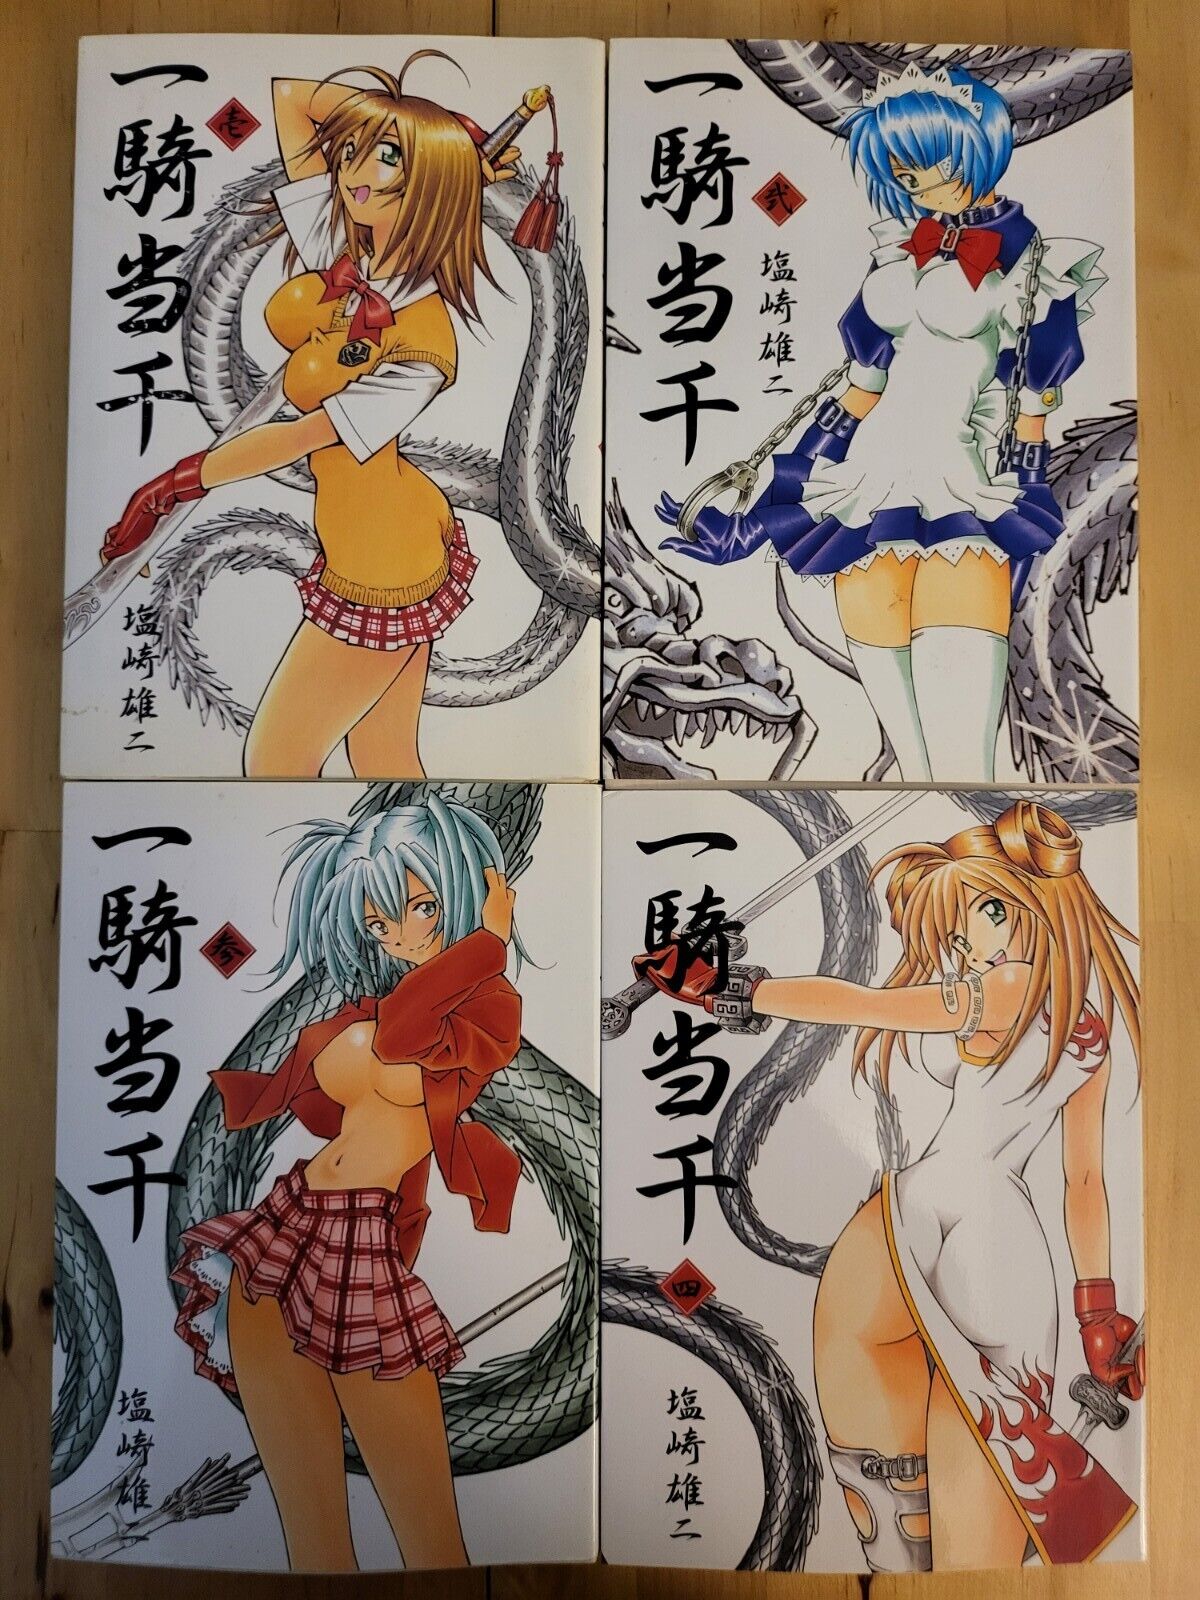 Ikkitousen Battle Vixens 1-4 manga Japanese. Vol #4 is 1st Edition.